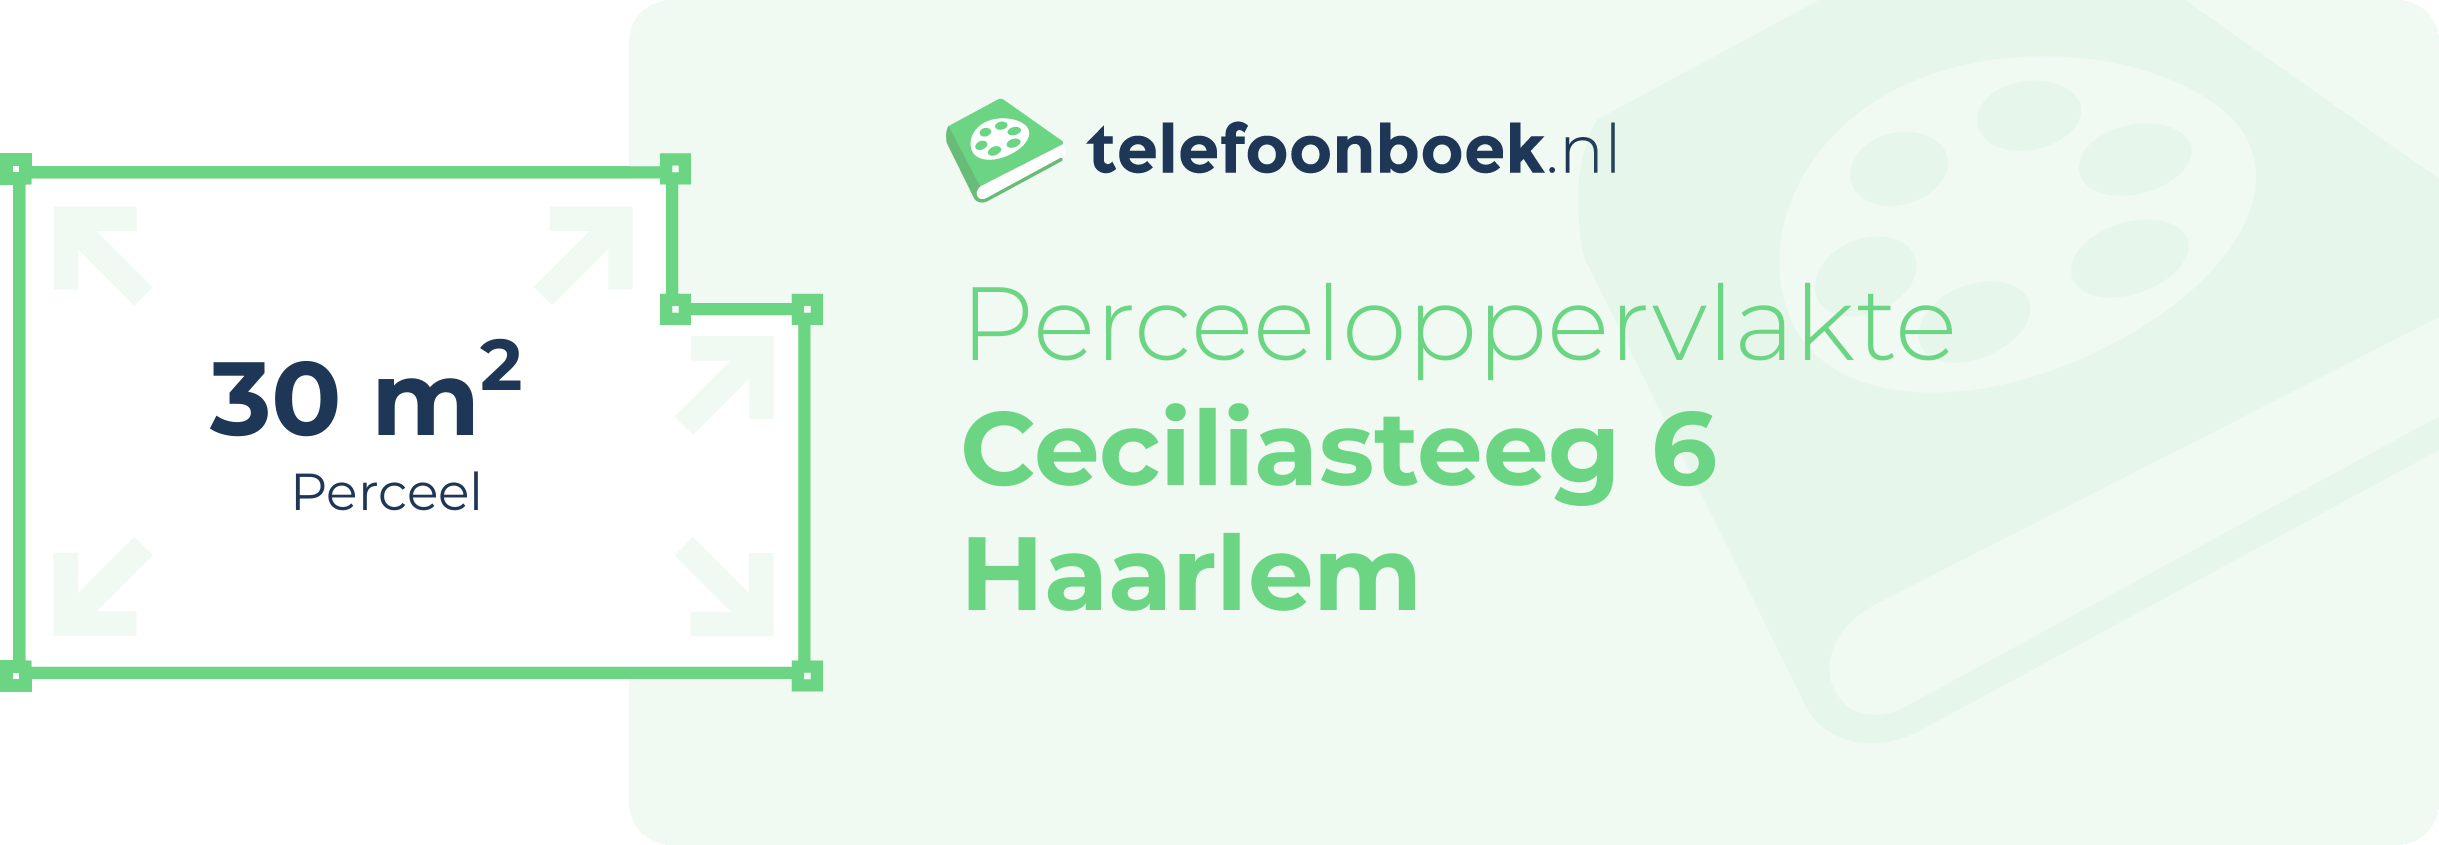 Perceeloppervlakte Ceciliasteeg 6 Haarlem